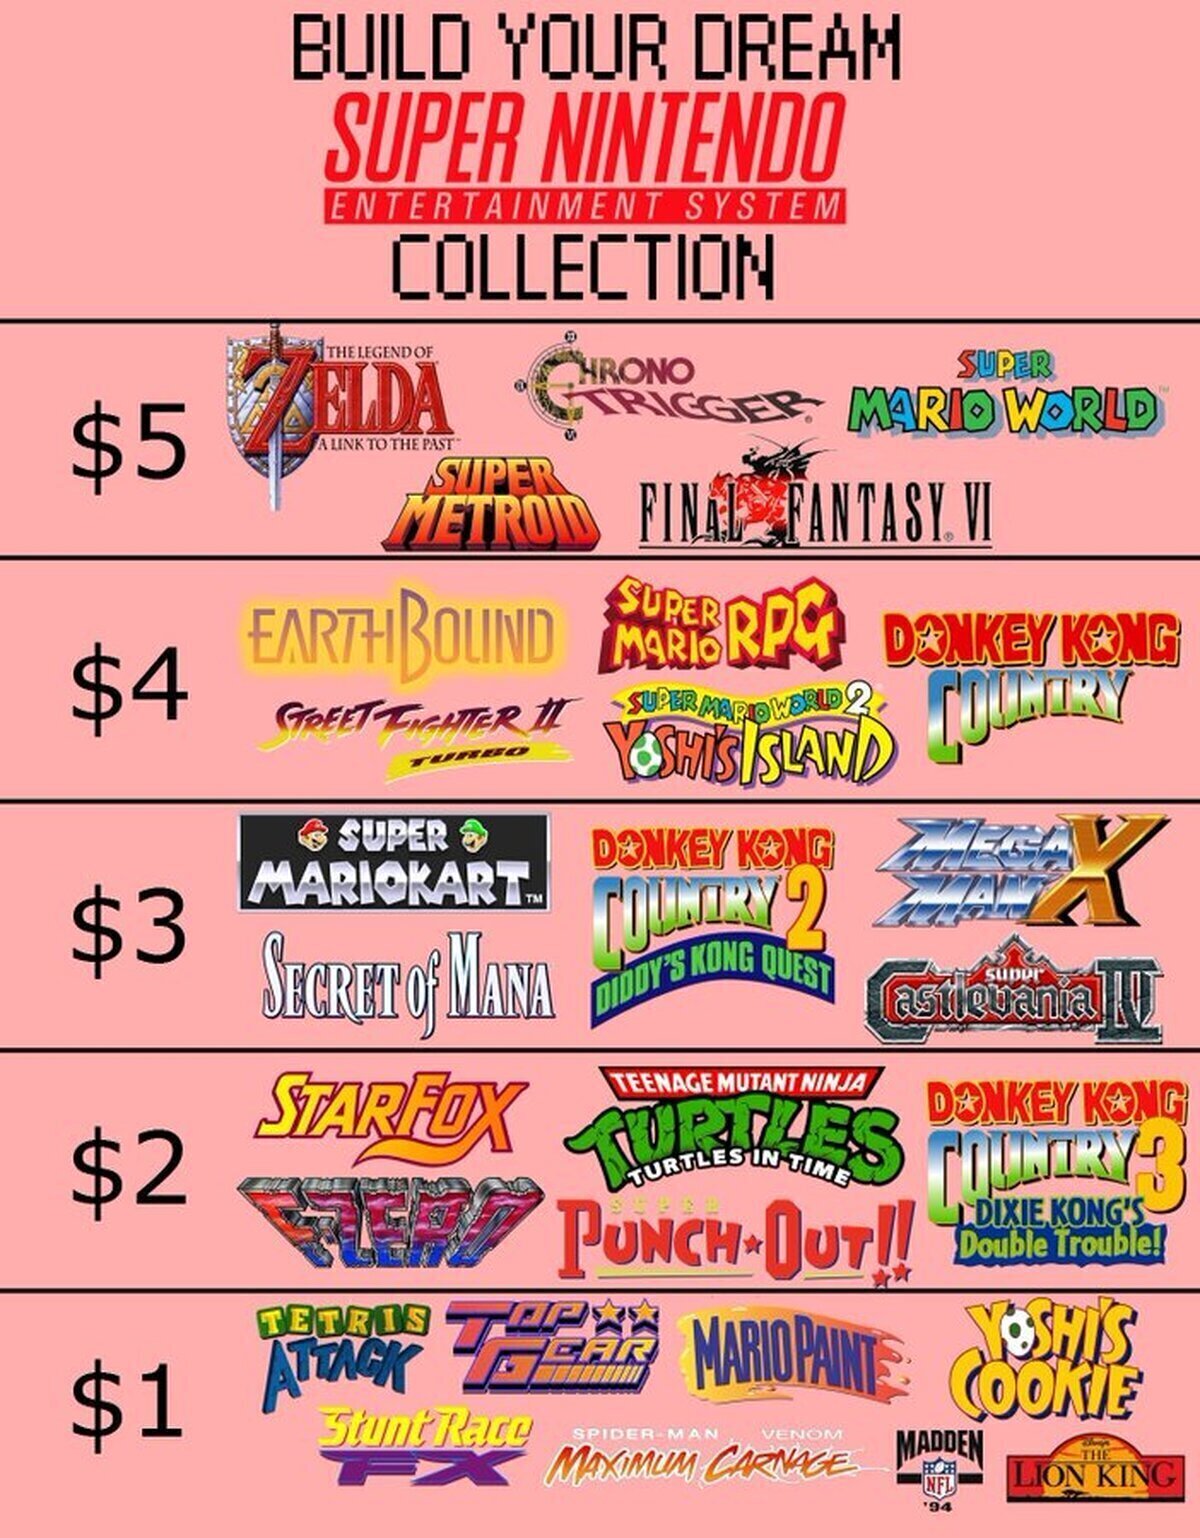 Tienes 30 dólares. ¿Qué juegos comprarías?